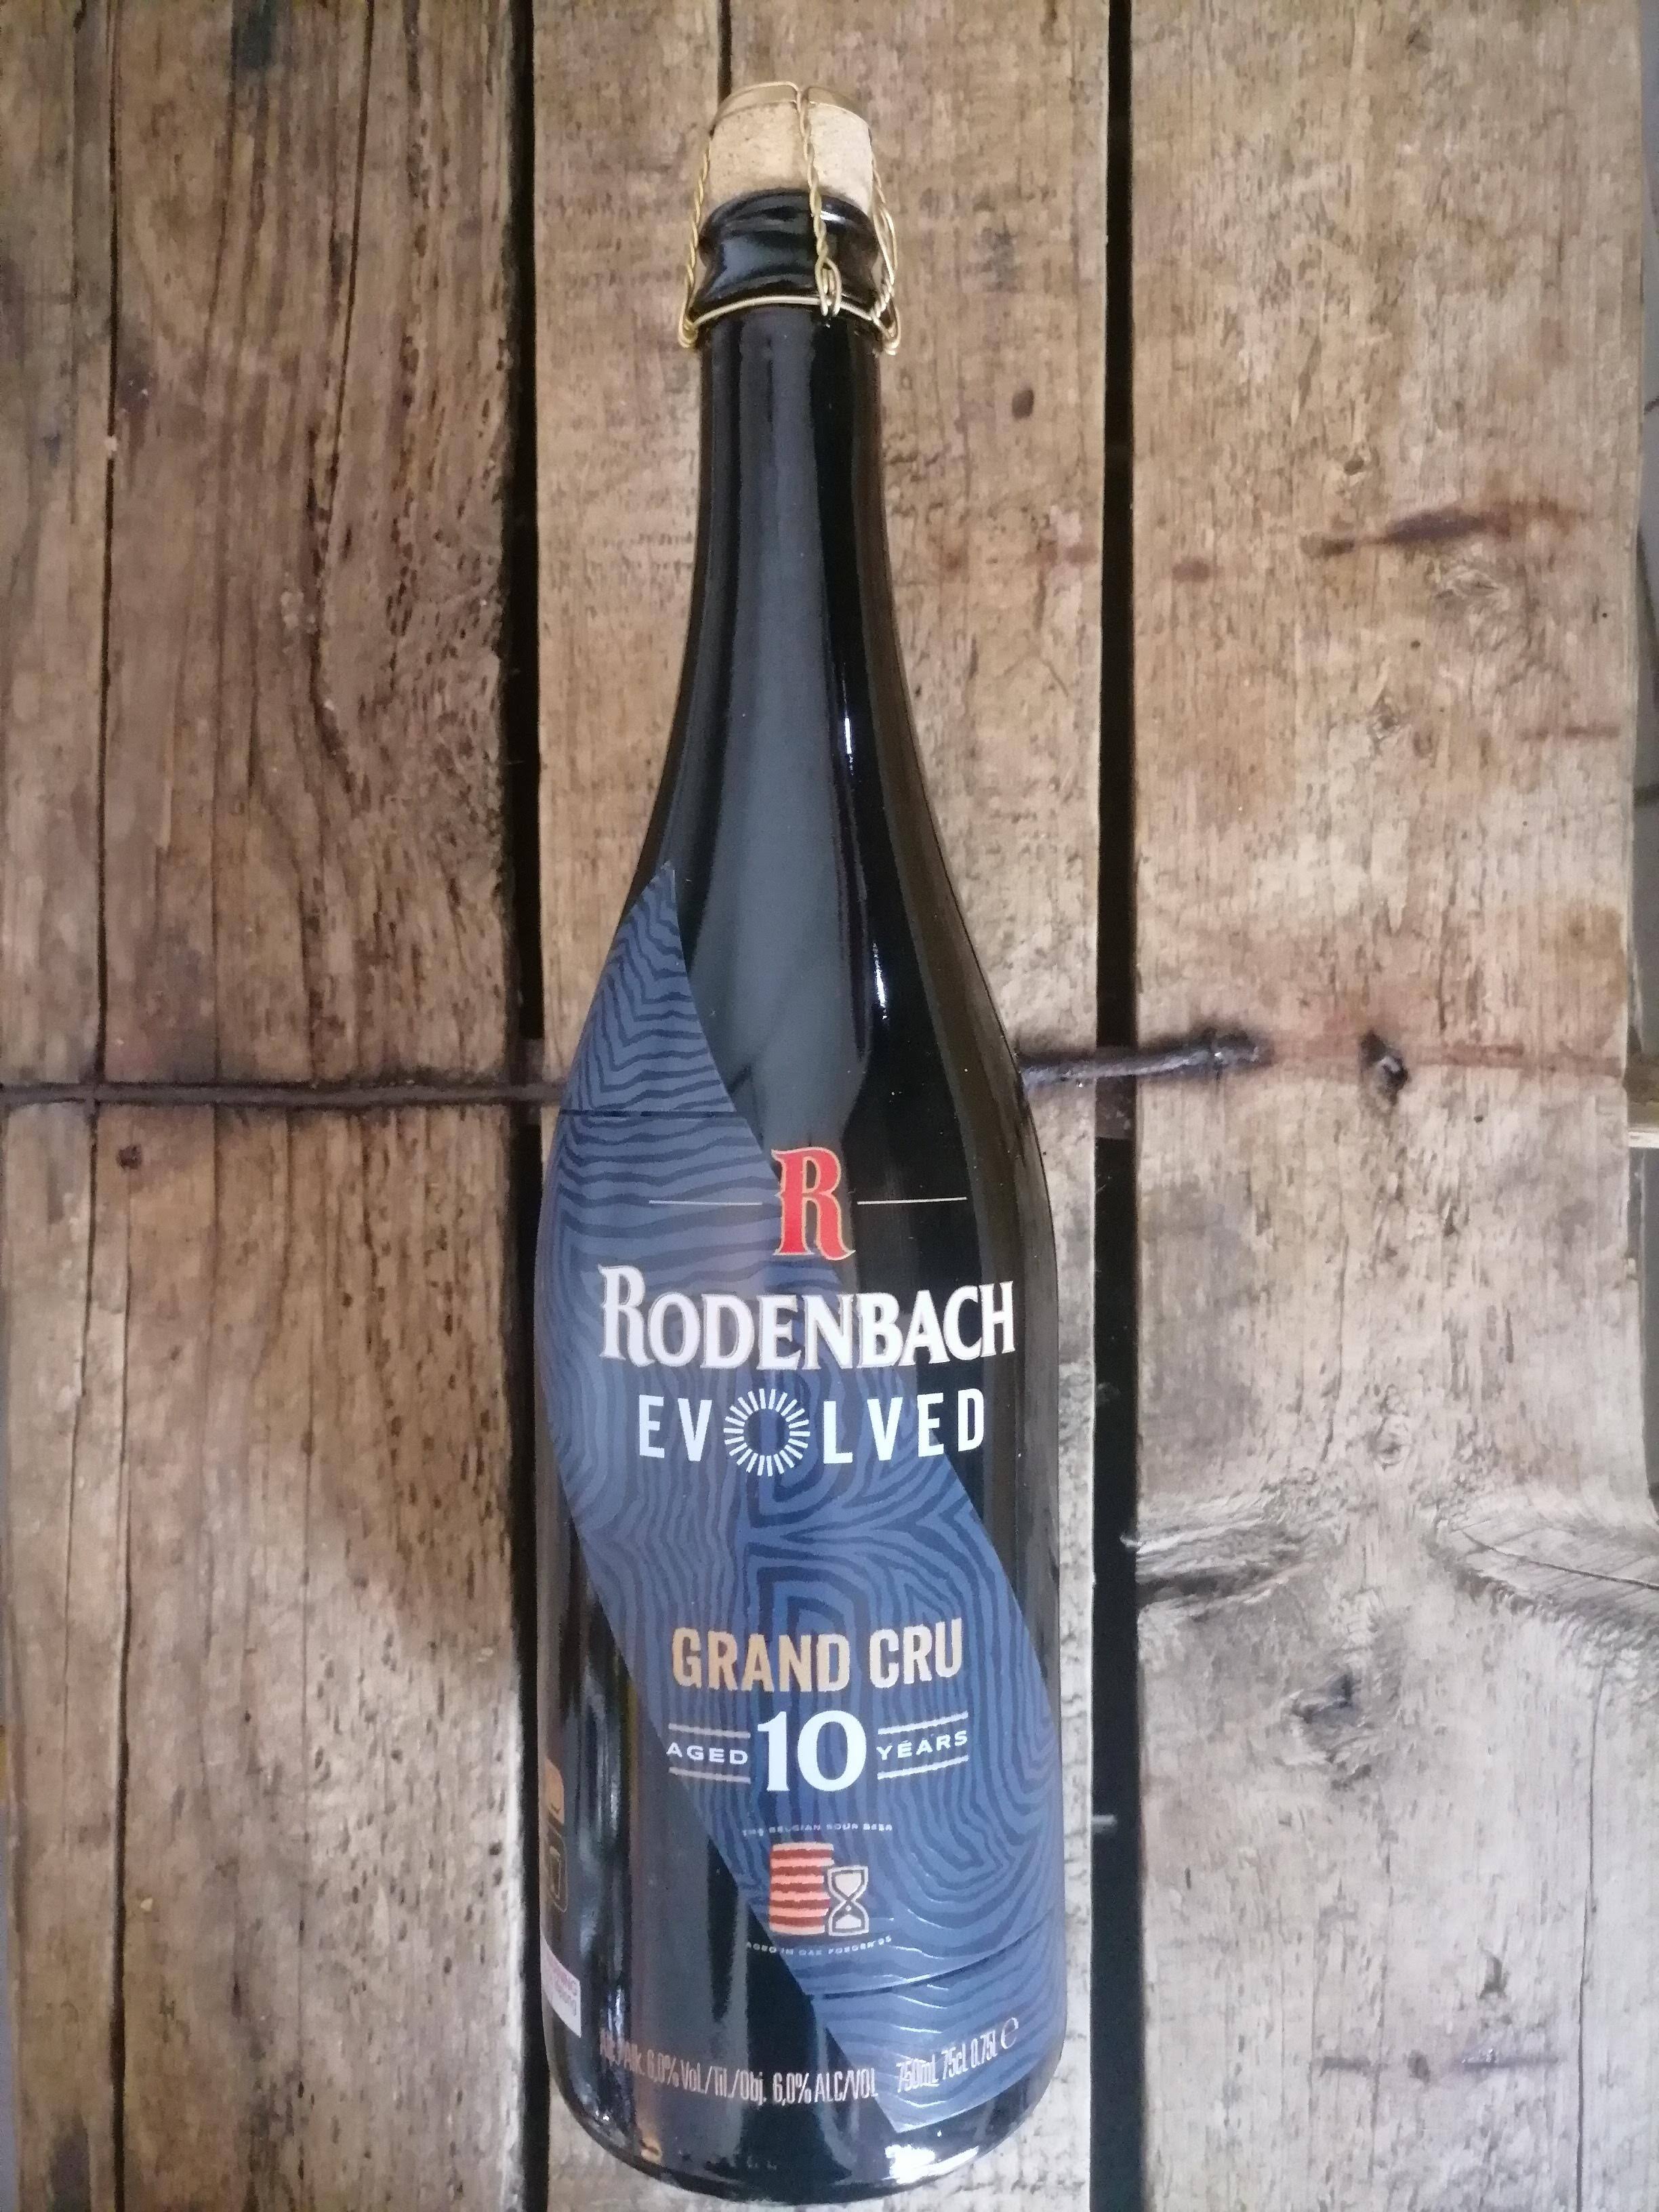 Rodenbach - Evolved Grand Cru